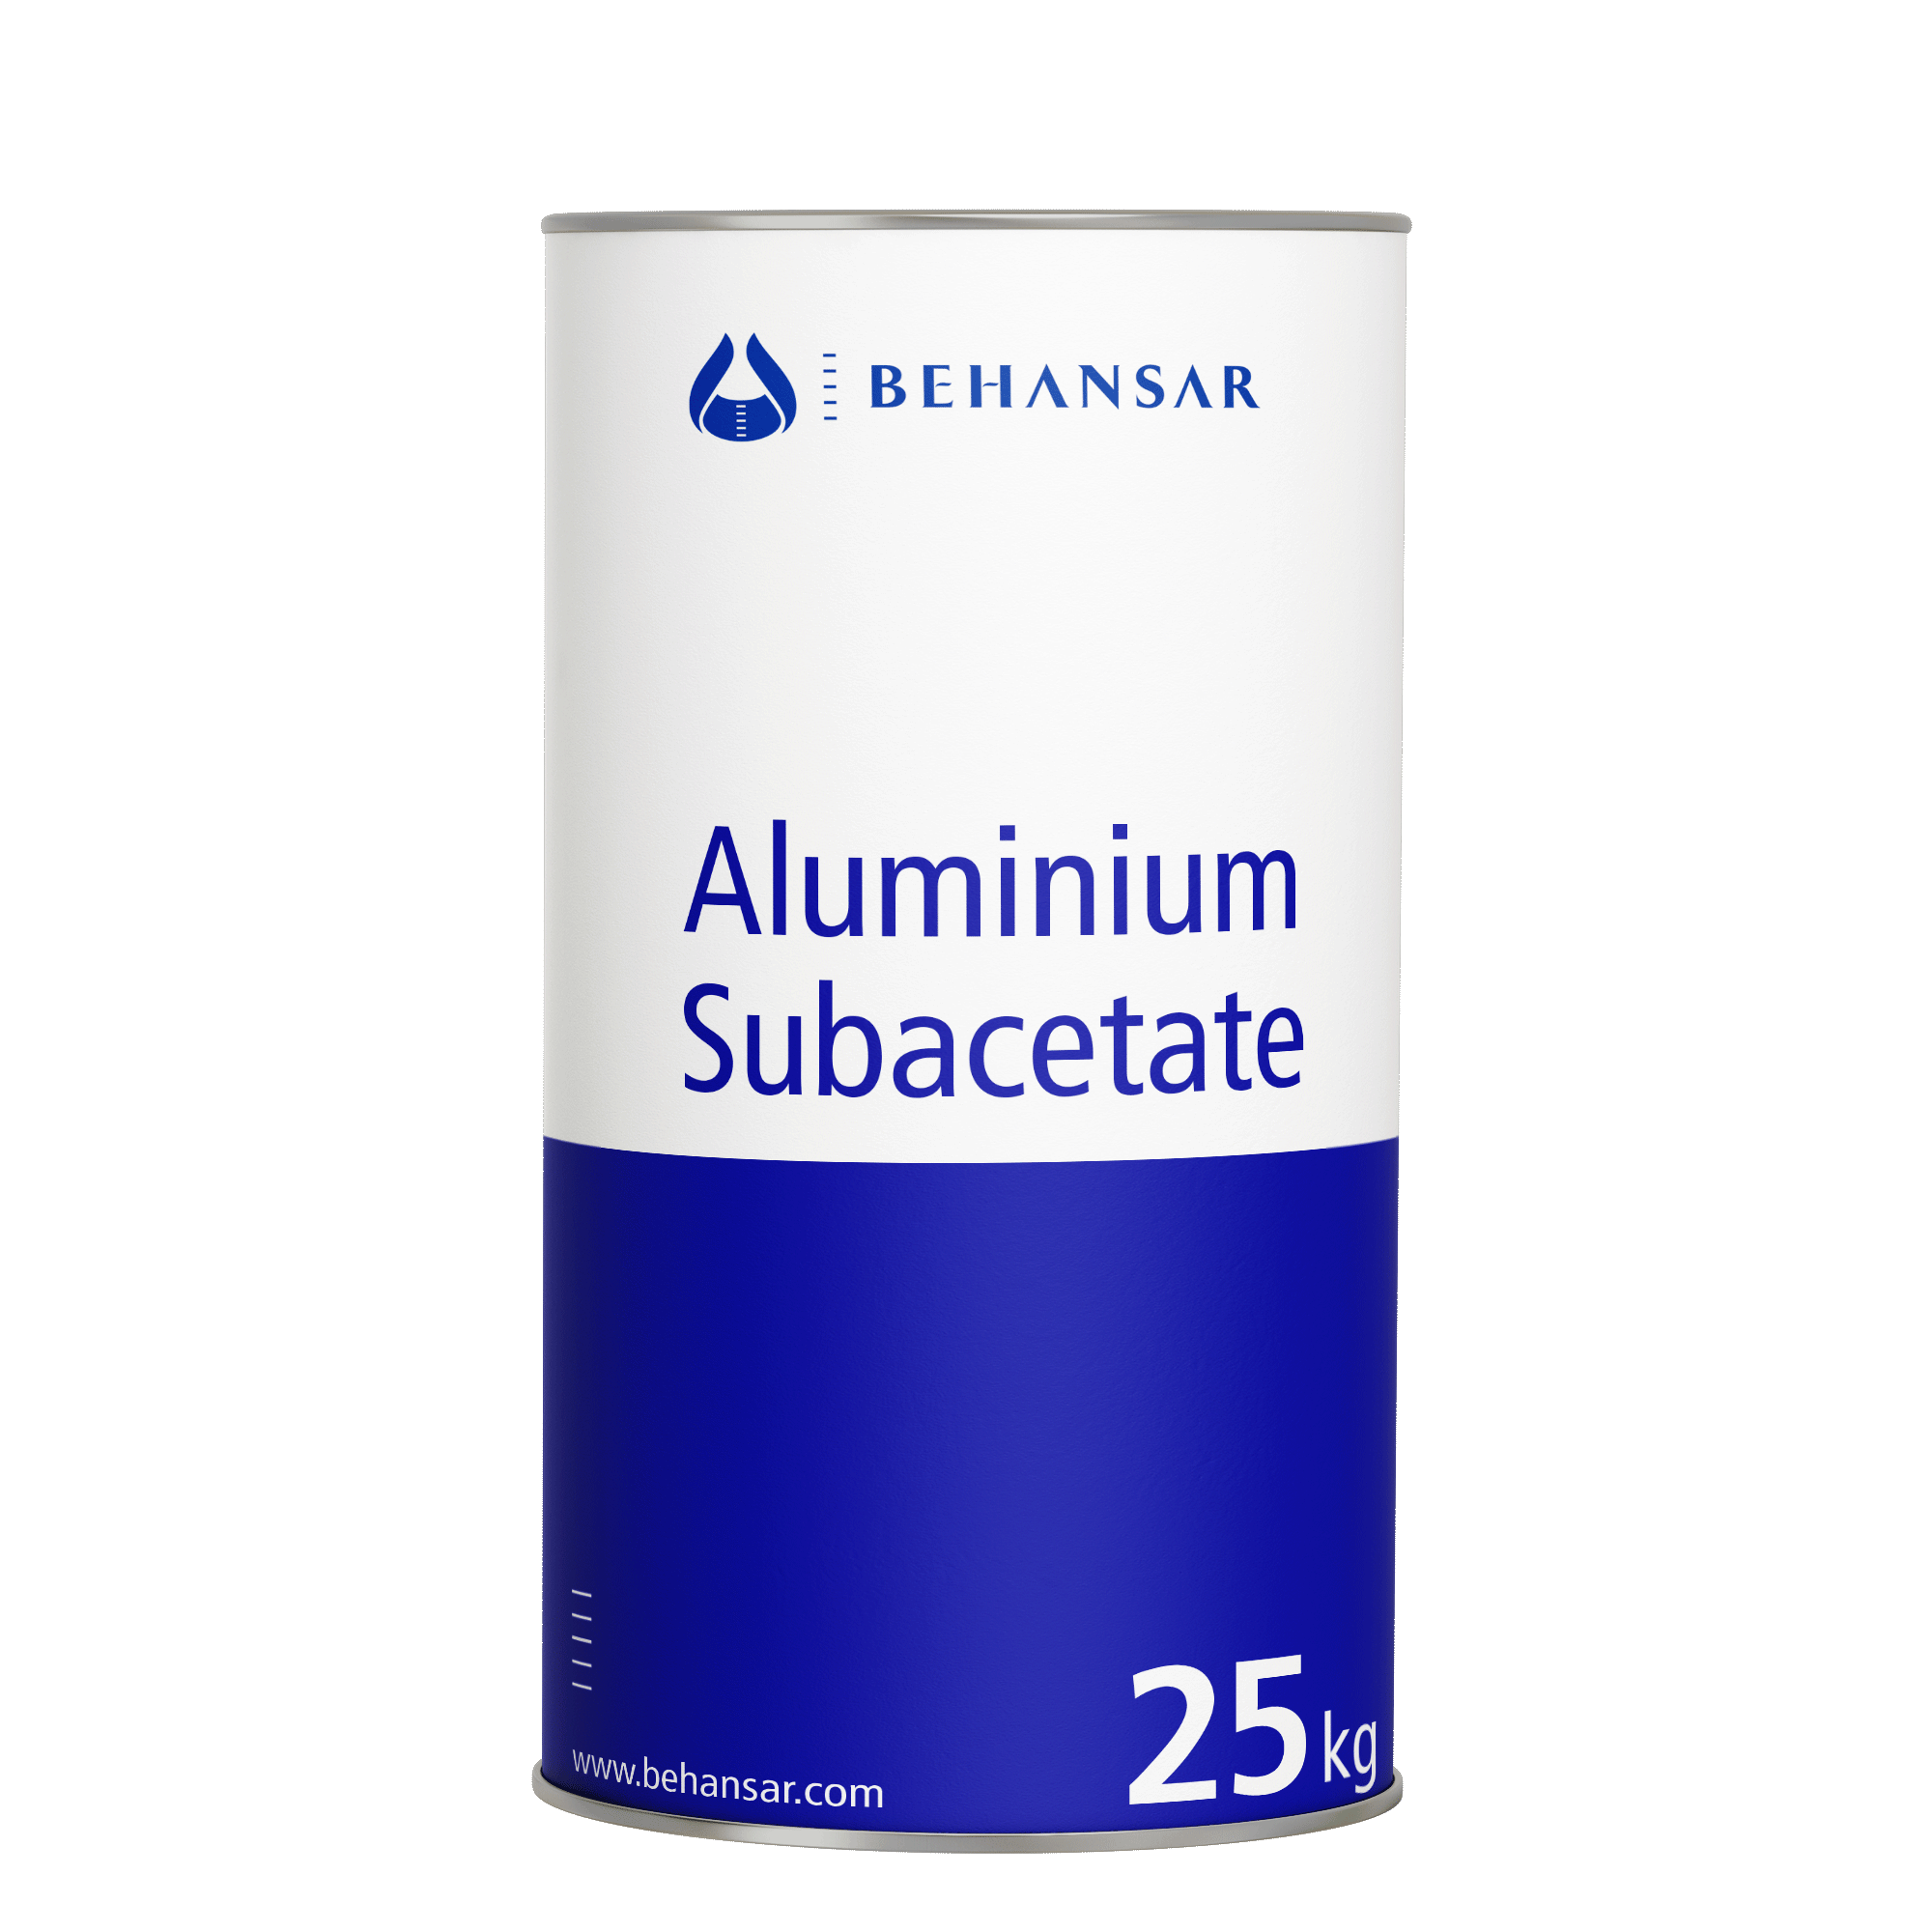 آلومینیوم ساب استات یکی از تولیدات شرکت بهانسار است